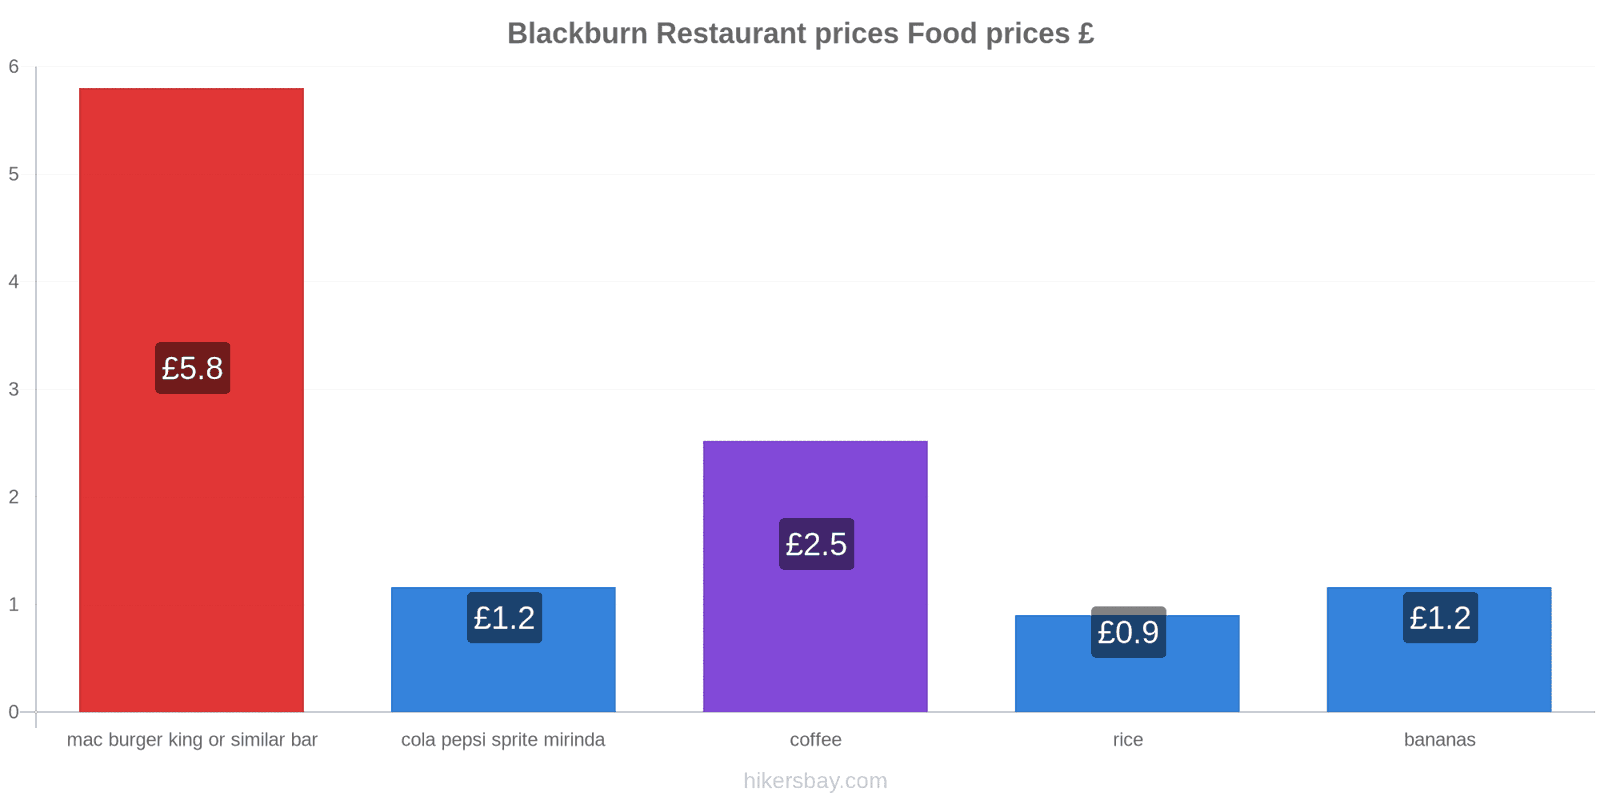 Blackburn price changes hikersbay.com